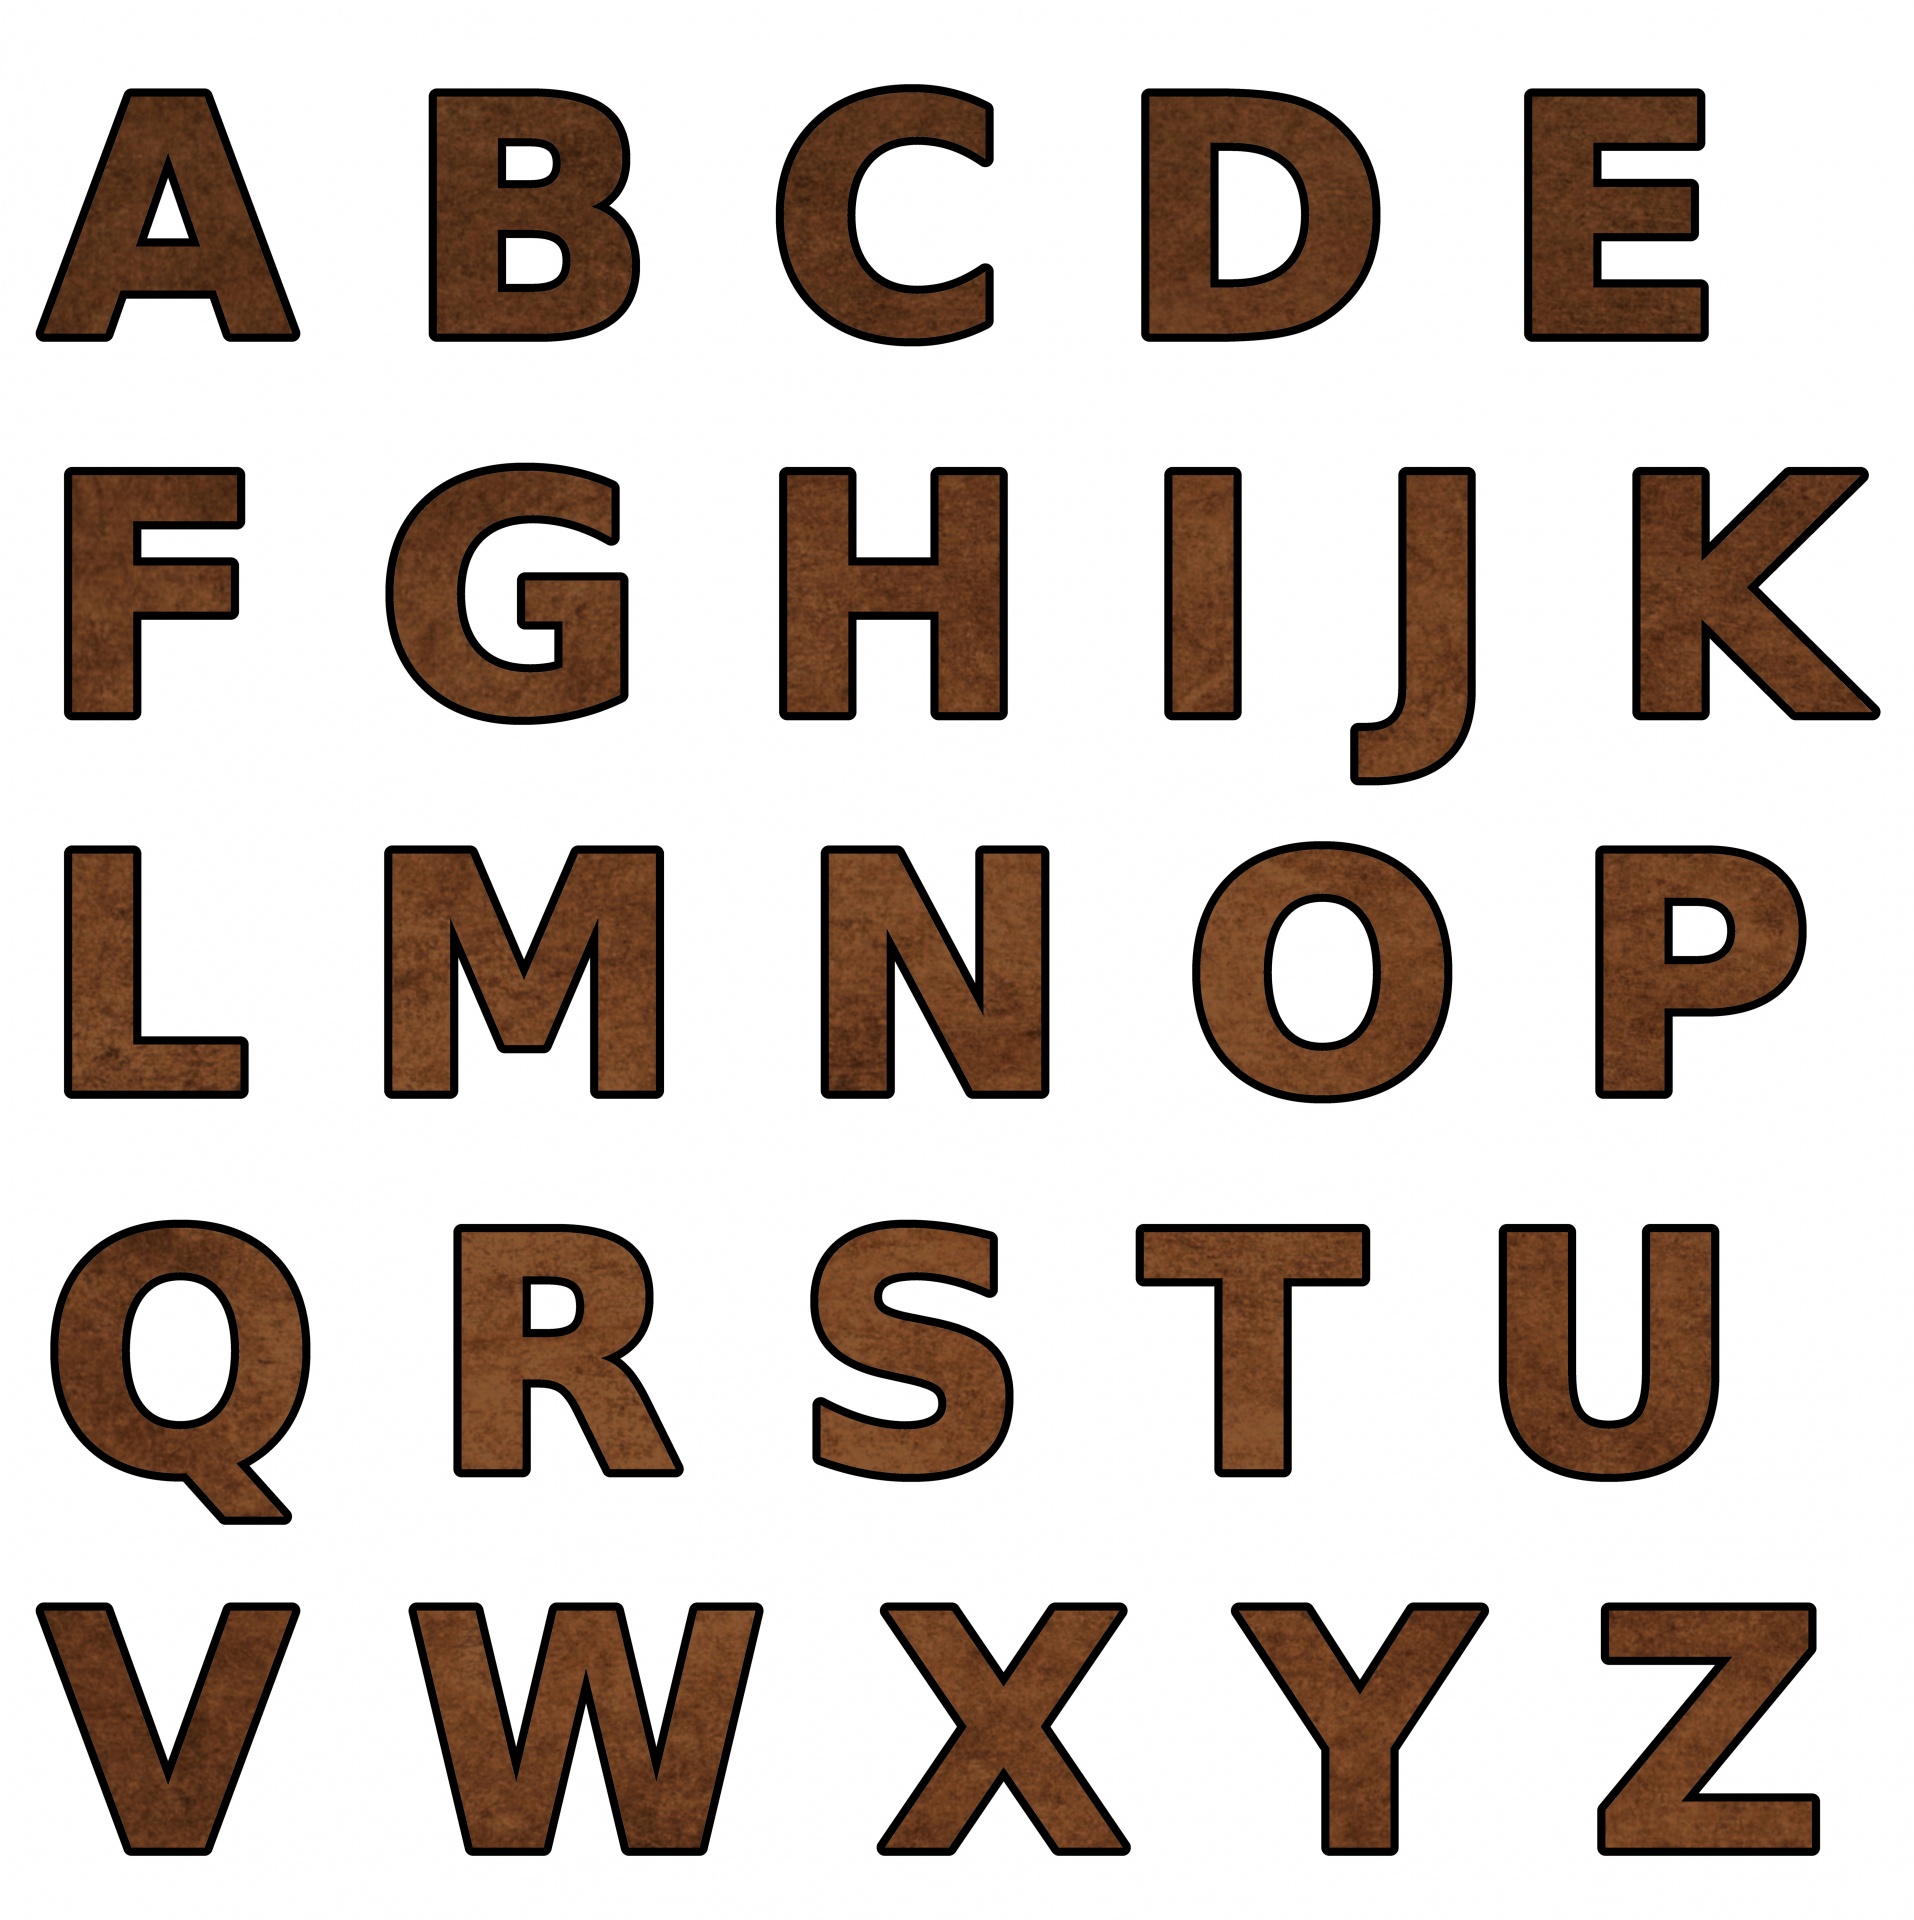 Hva om alfabetet var ordnet etter hvor ofte bokstaver var brukt?